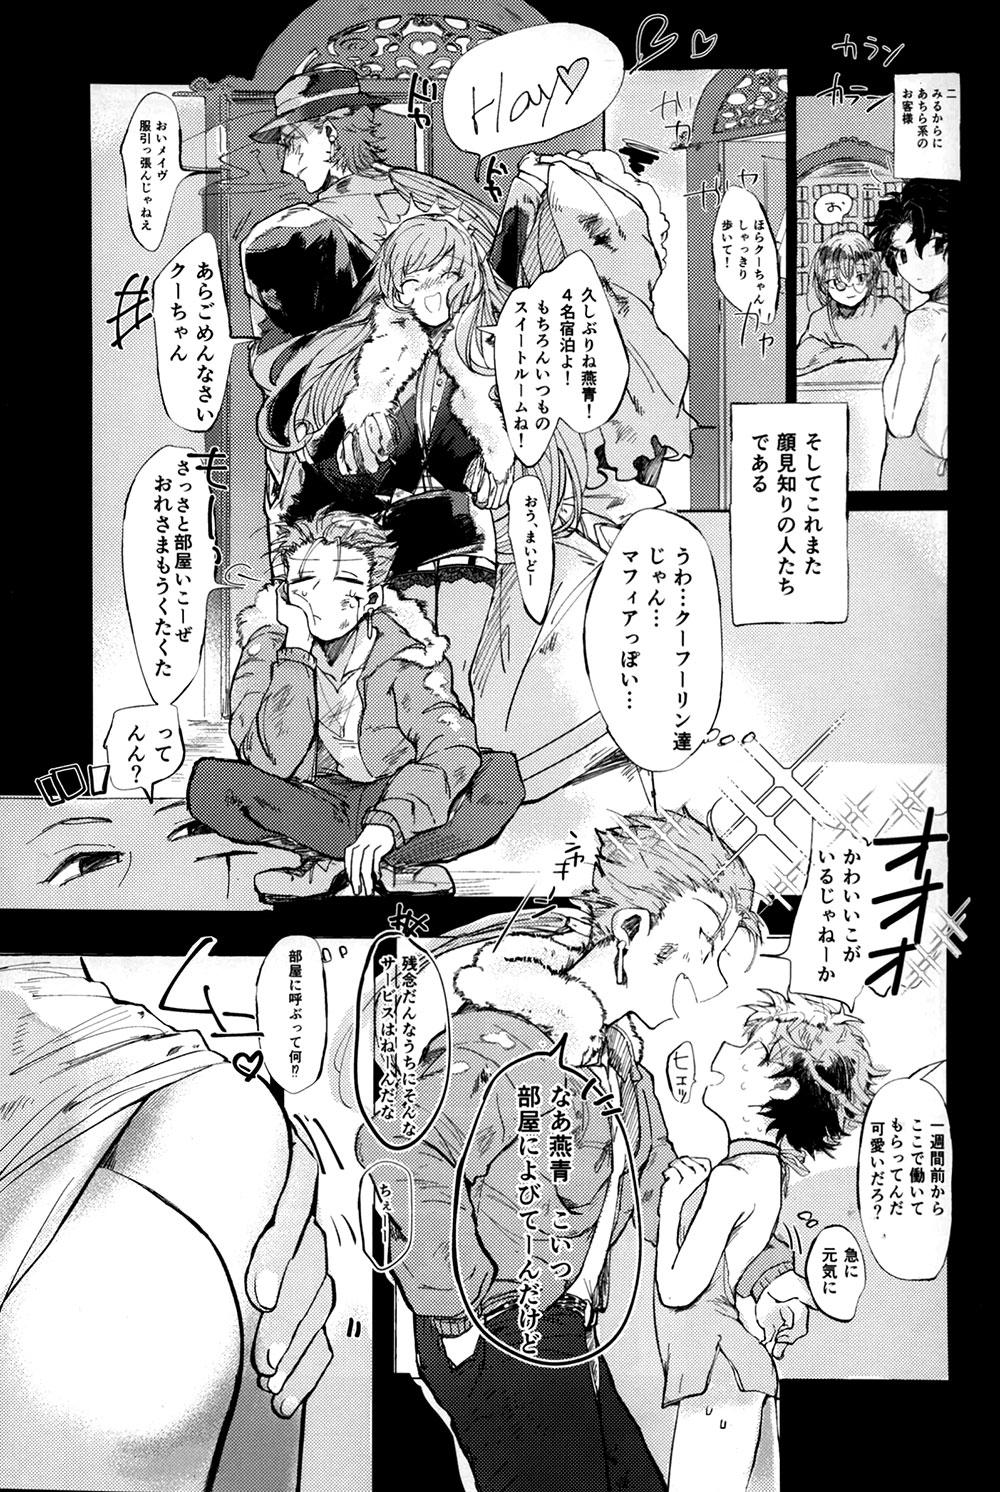 Slave Shinshin Hanten e Youkoso - Fate grand order Hentai - Page 8